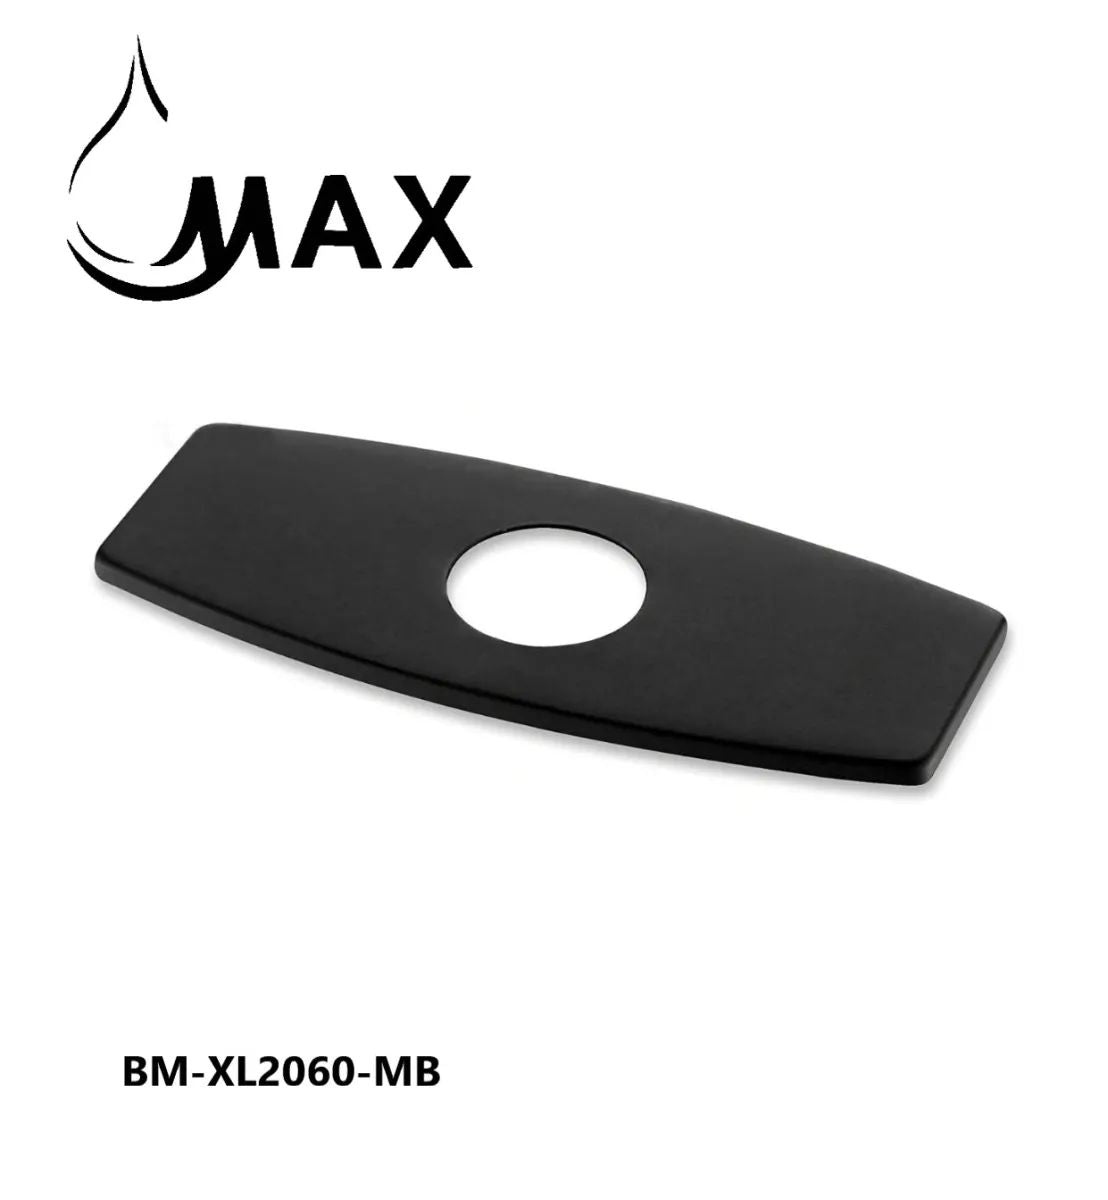 BM-XL2060-MB